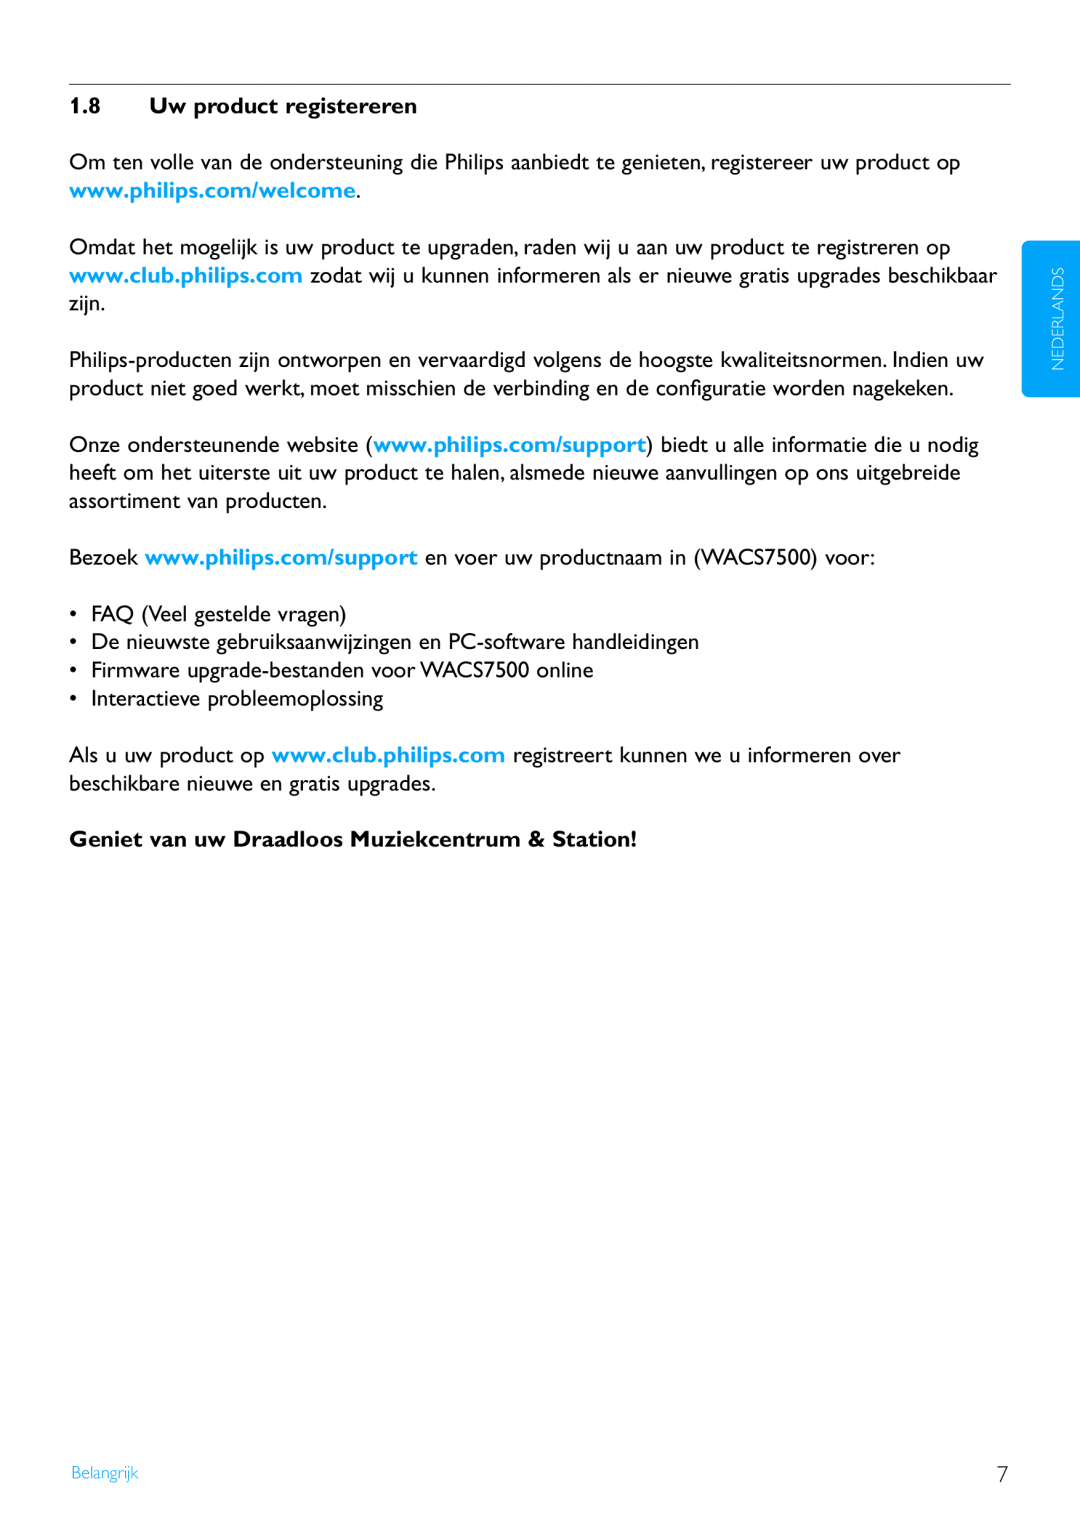 Philips WACS7500 manual 1.8Uw product registereren, Geniet van uw Draadloos Muziekcentrum & Station 